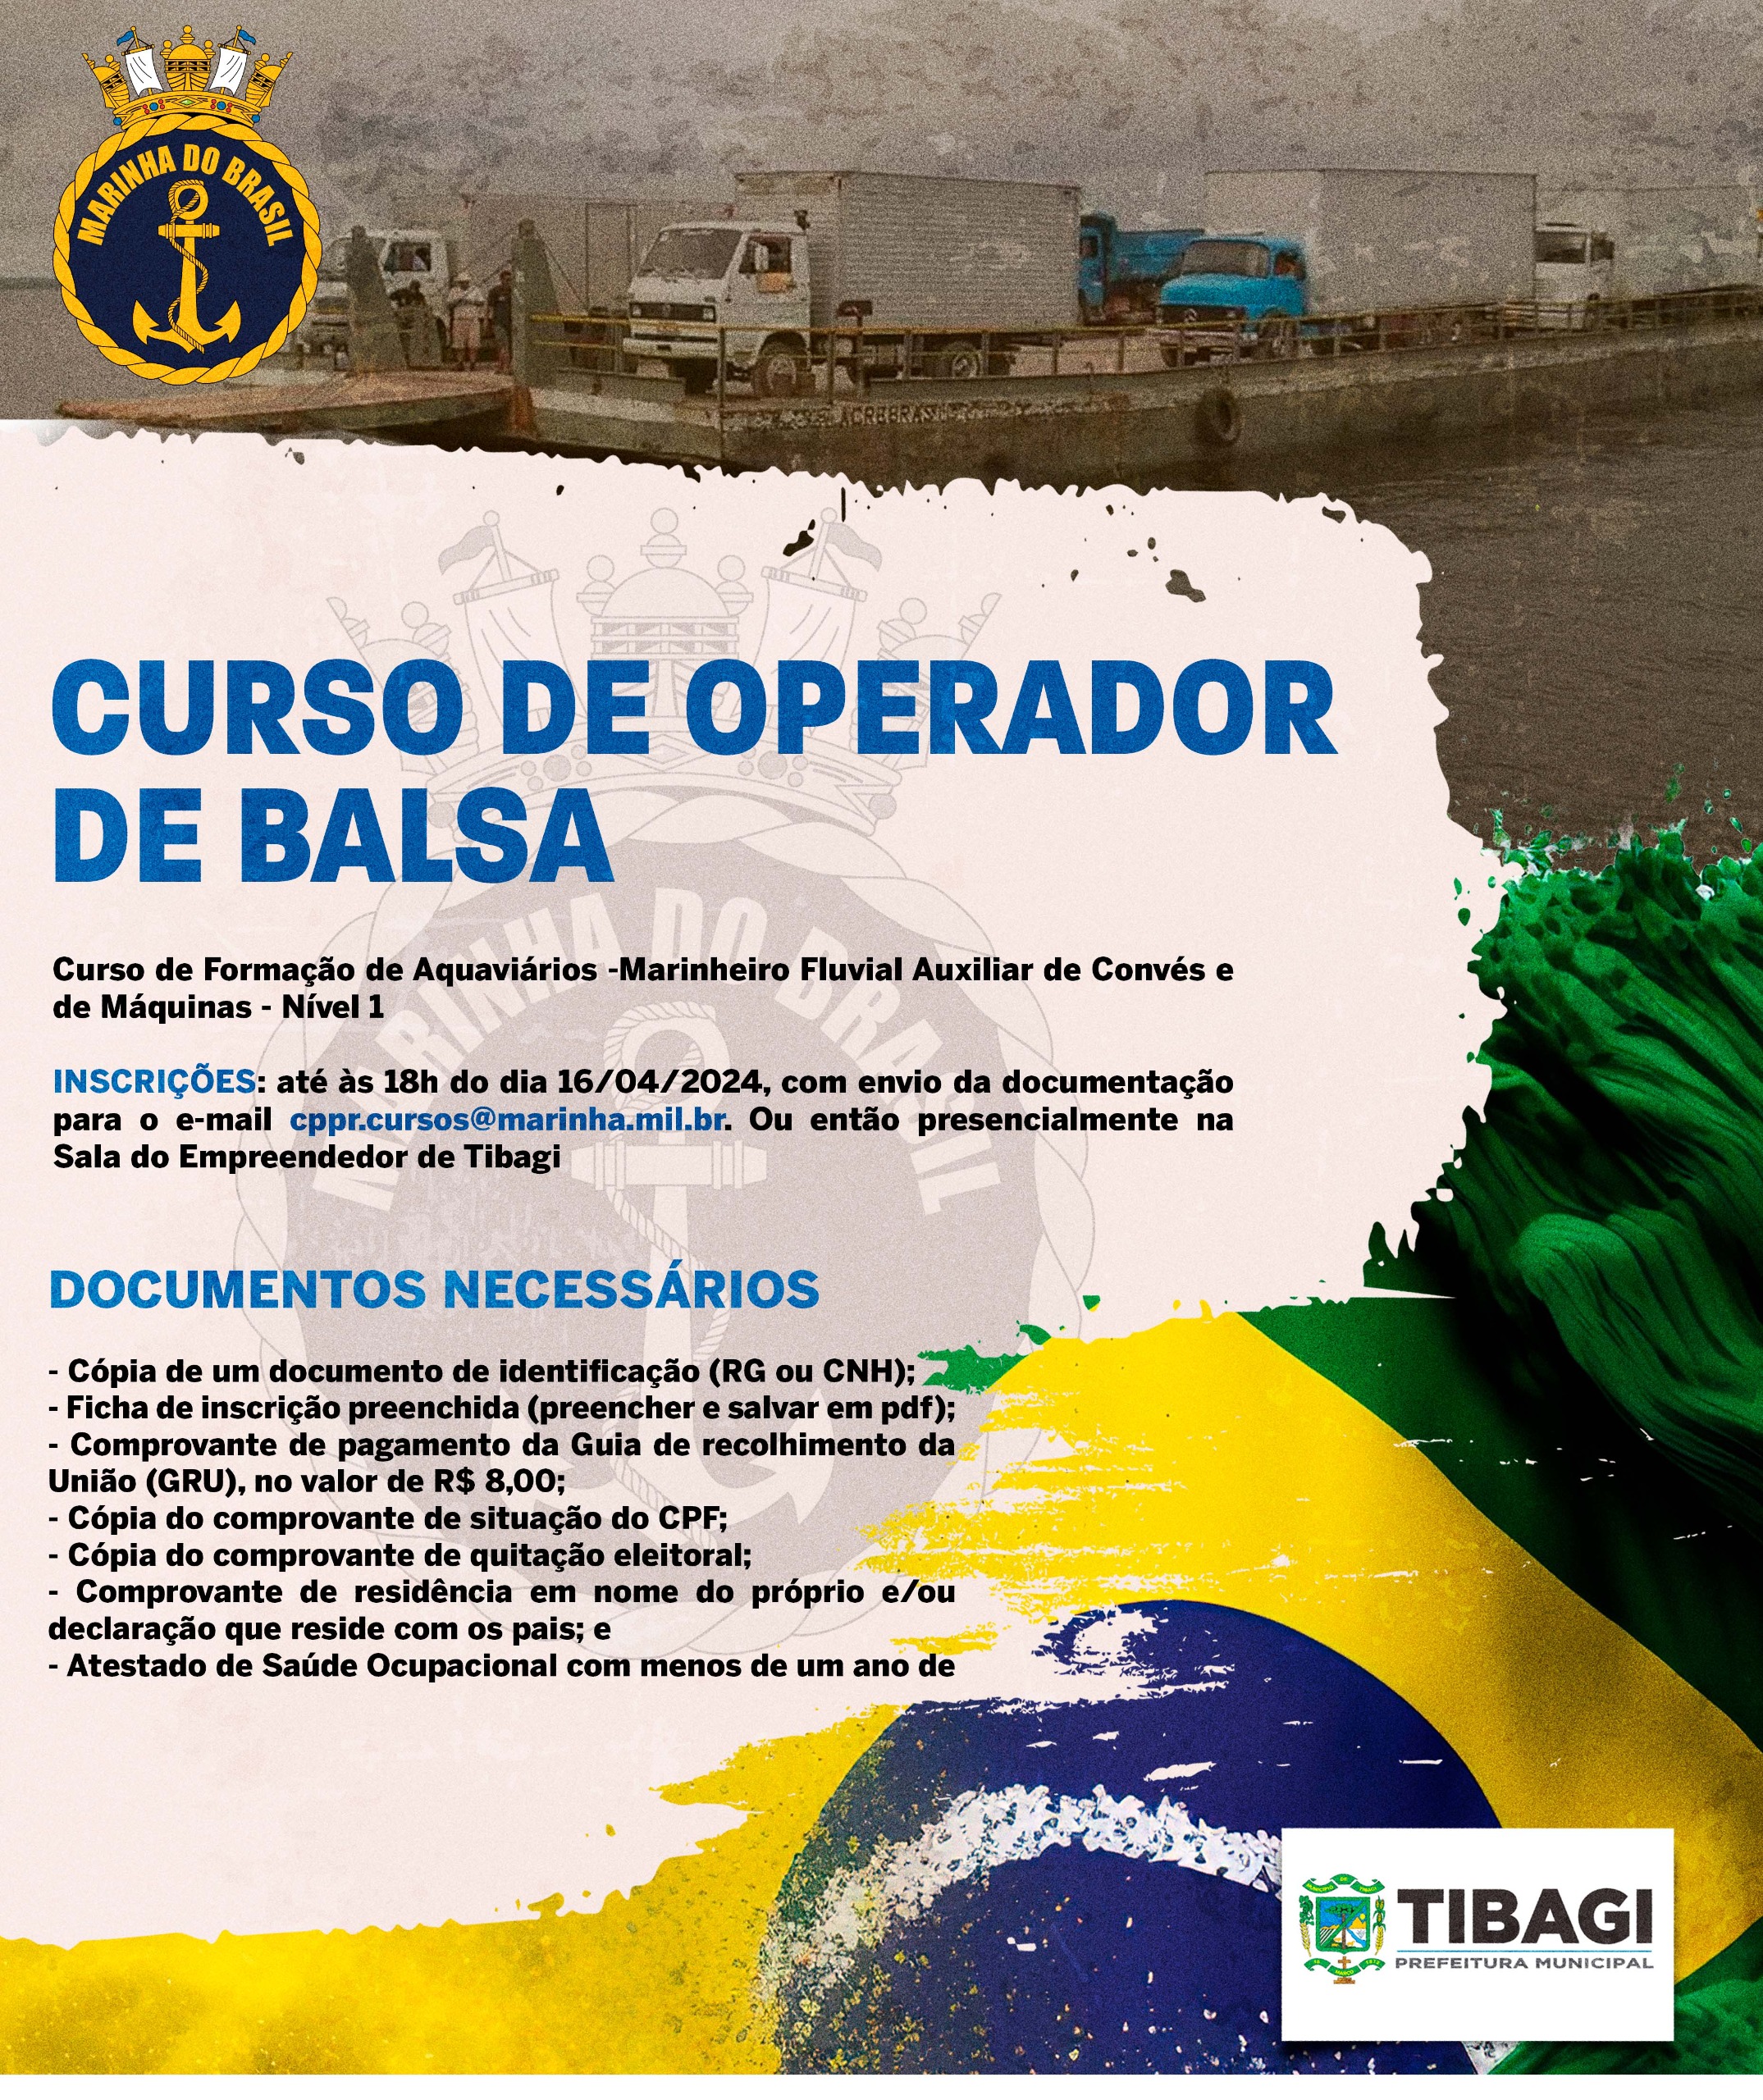 Capitania dos Portos do Paraná abre curso de operador de balsa em Tibagi